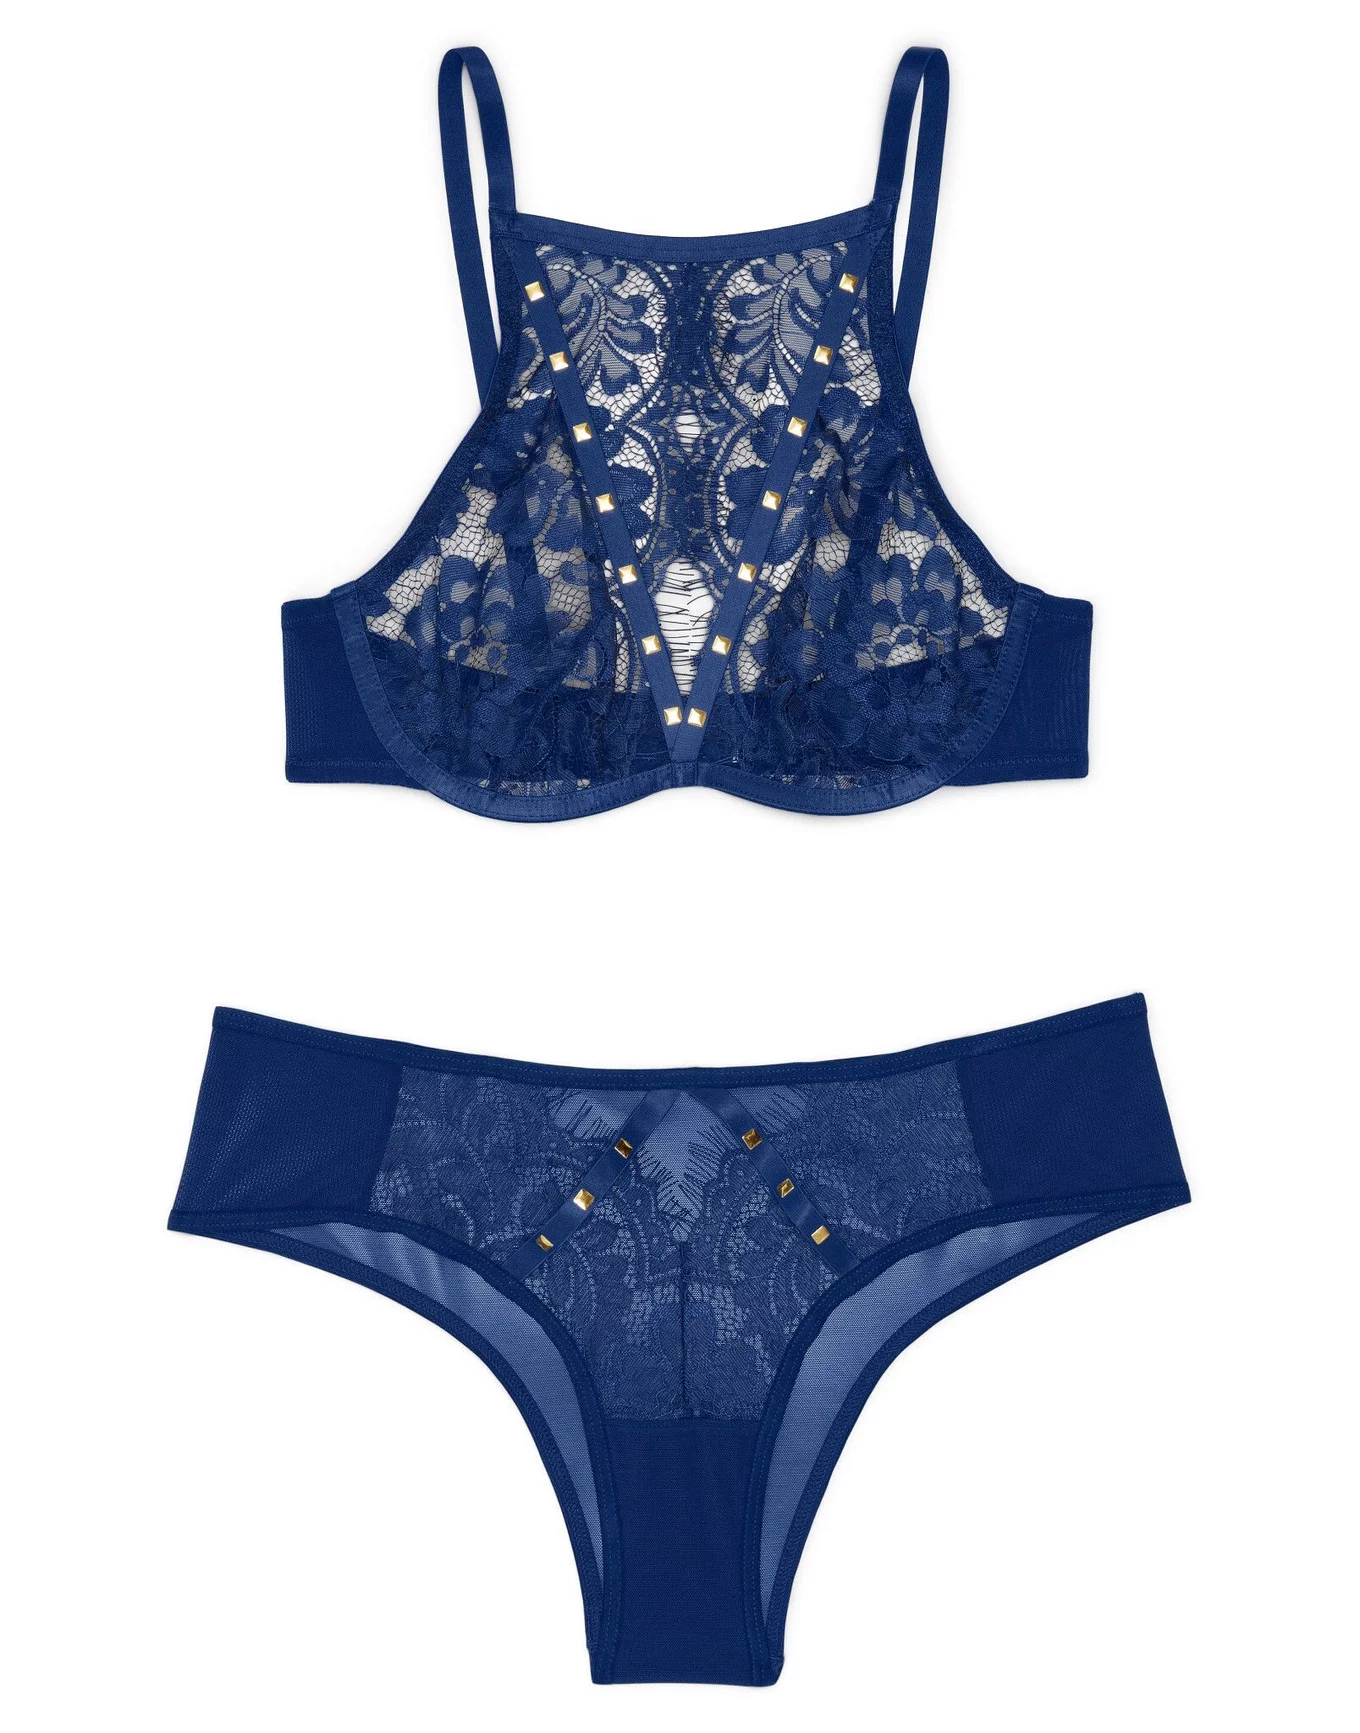 Makclan Noway Nice In Net Lace Panty - Blue (S)